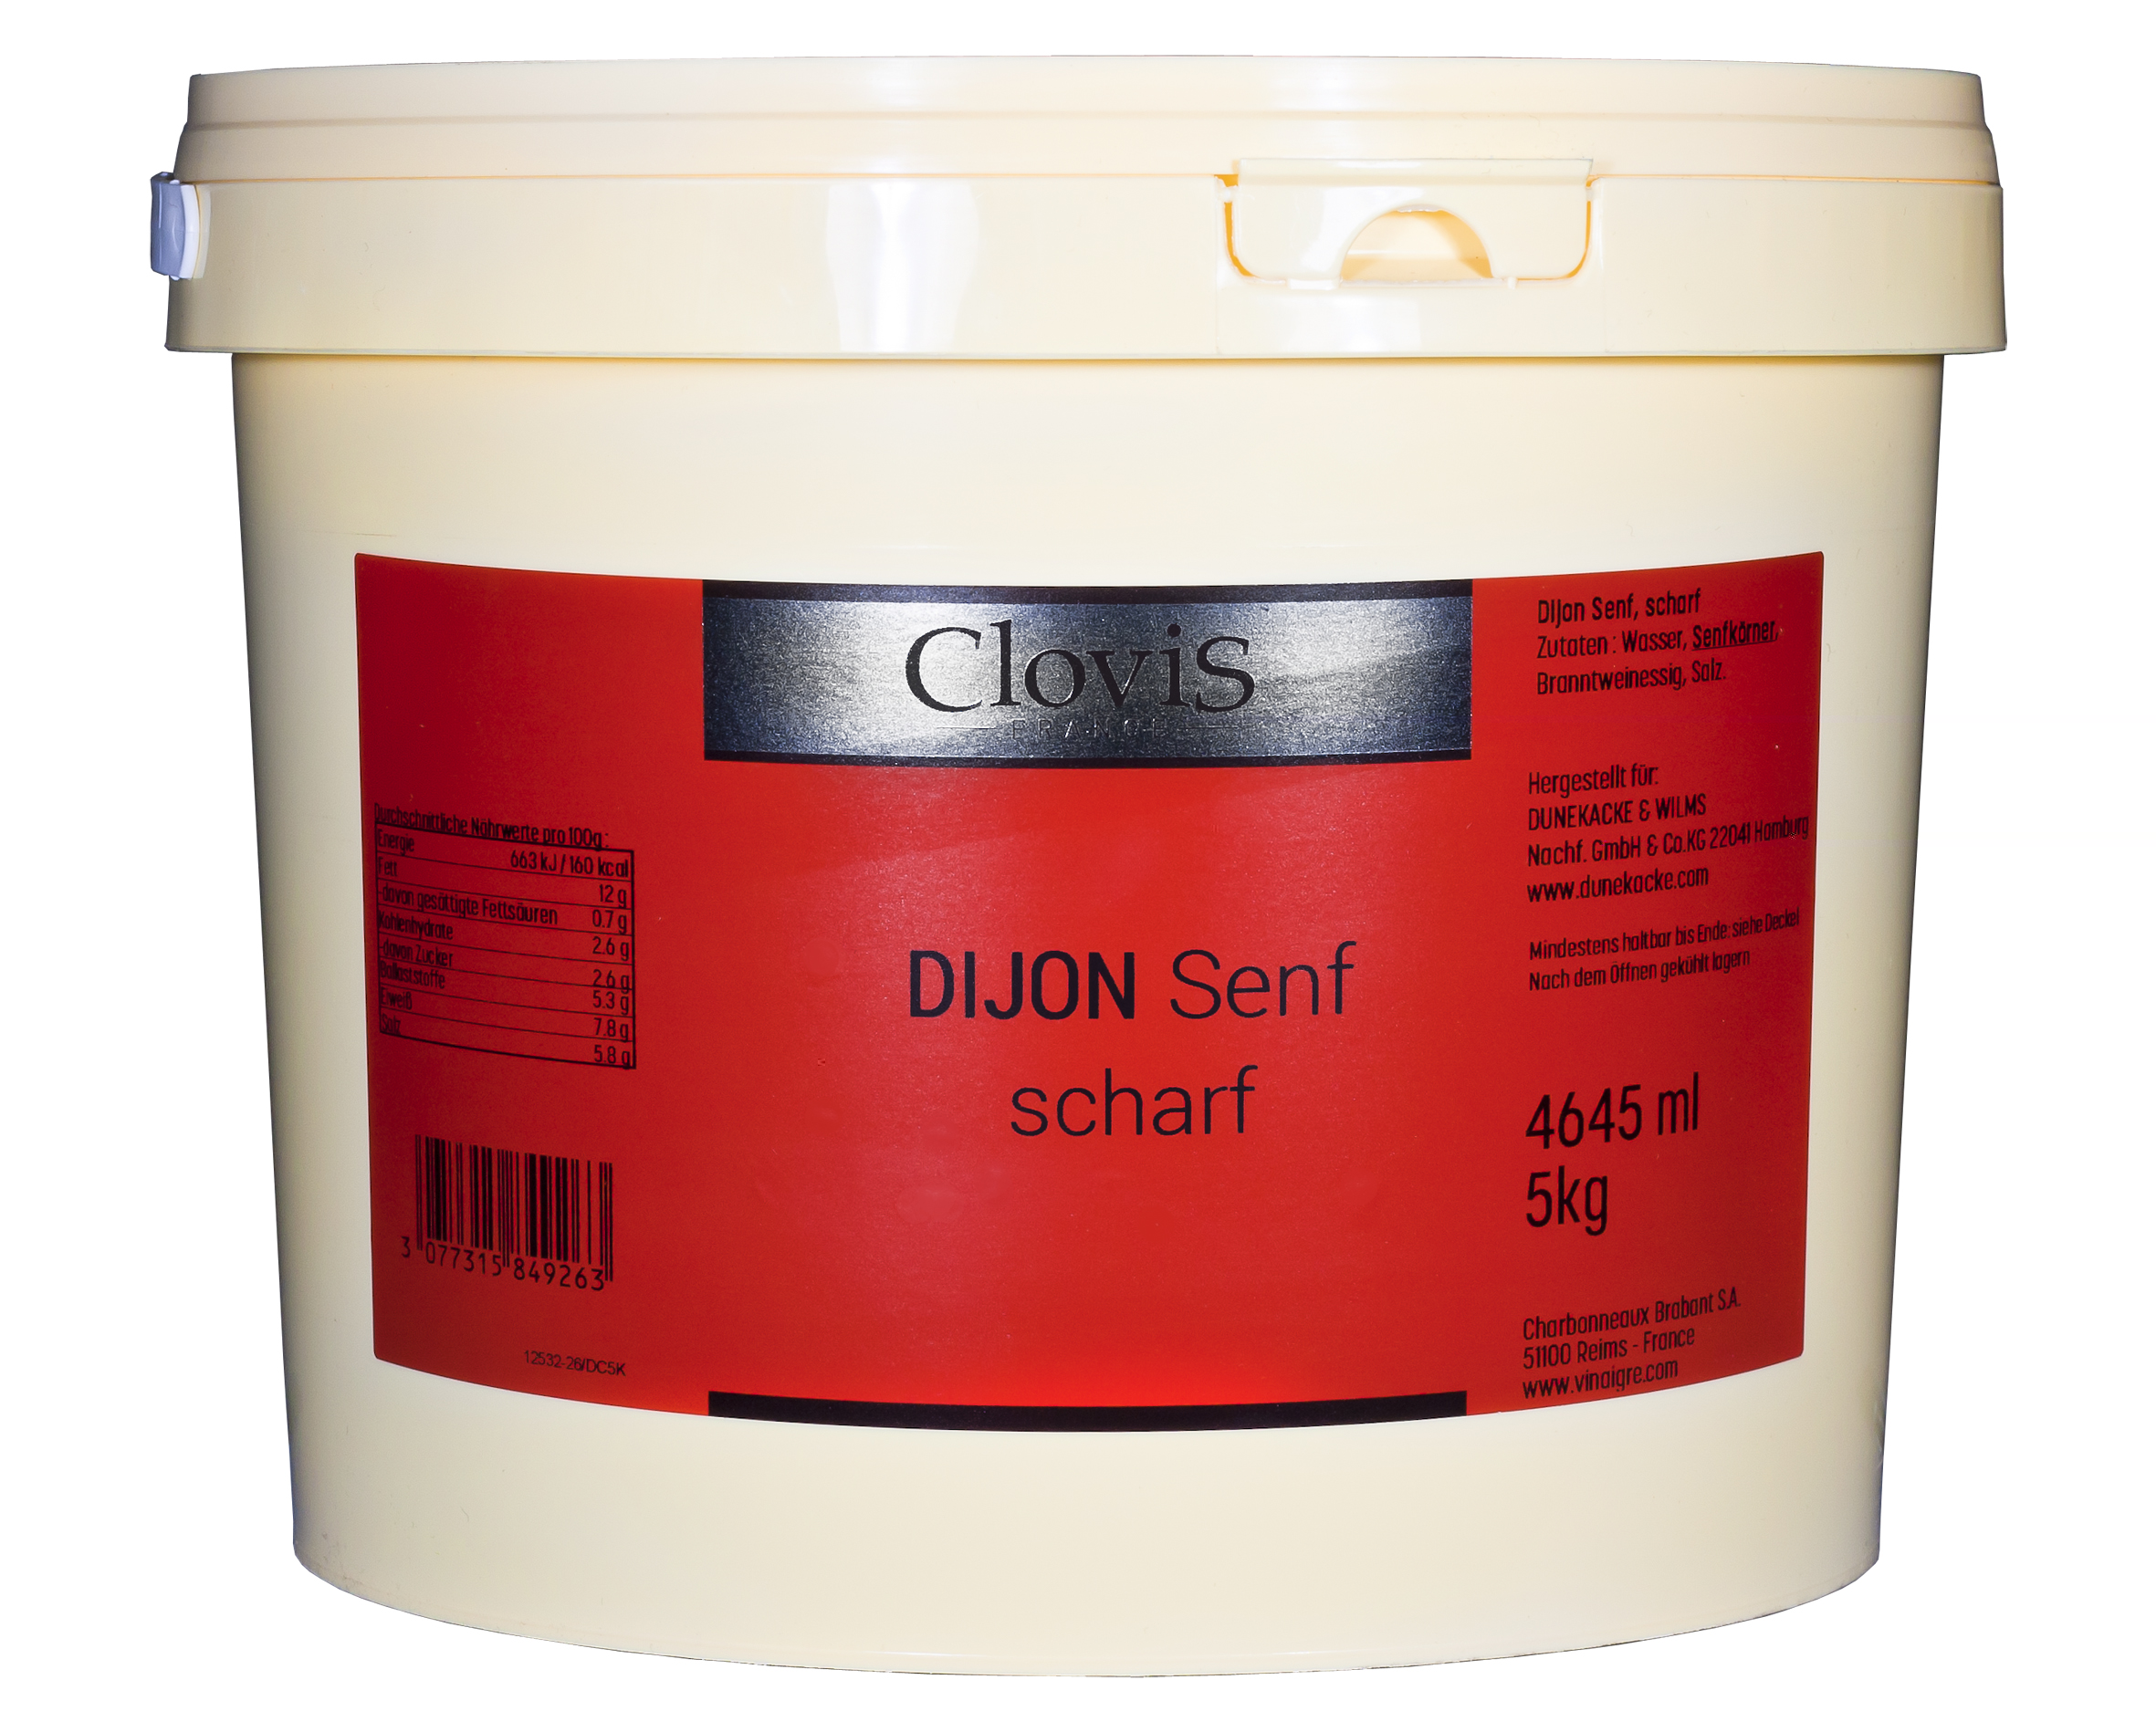 Dijon-Senf, scharf, 4645 ml